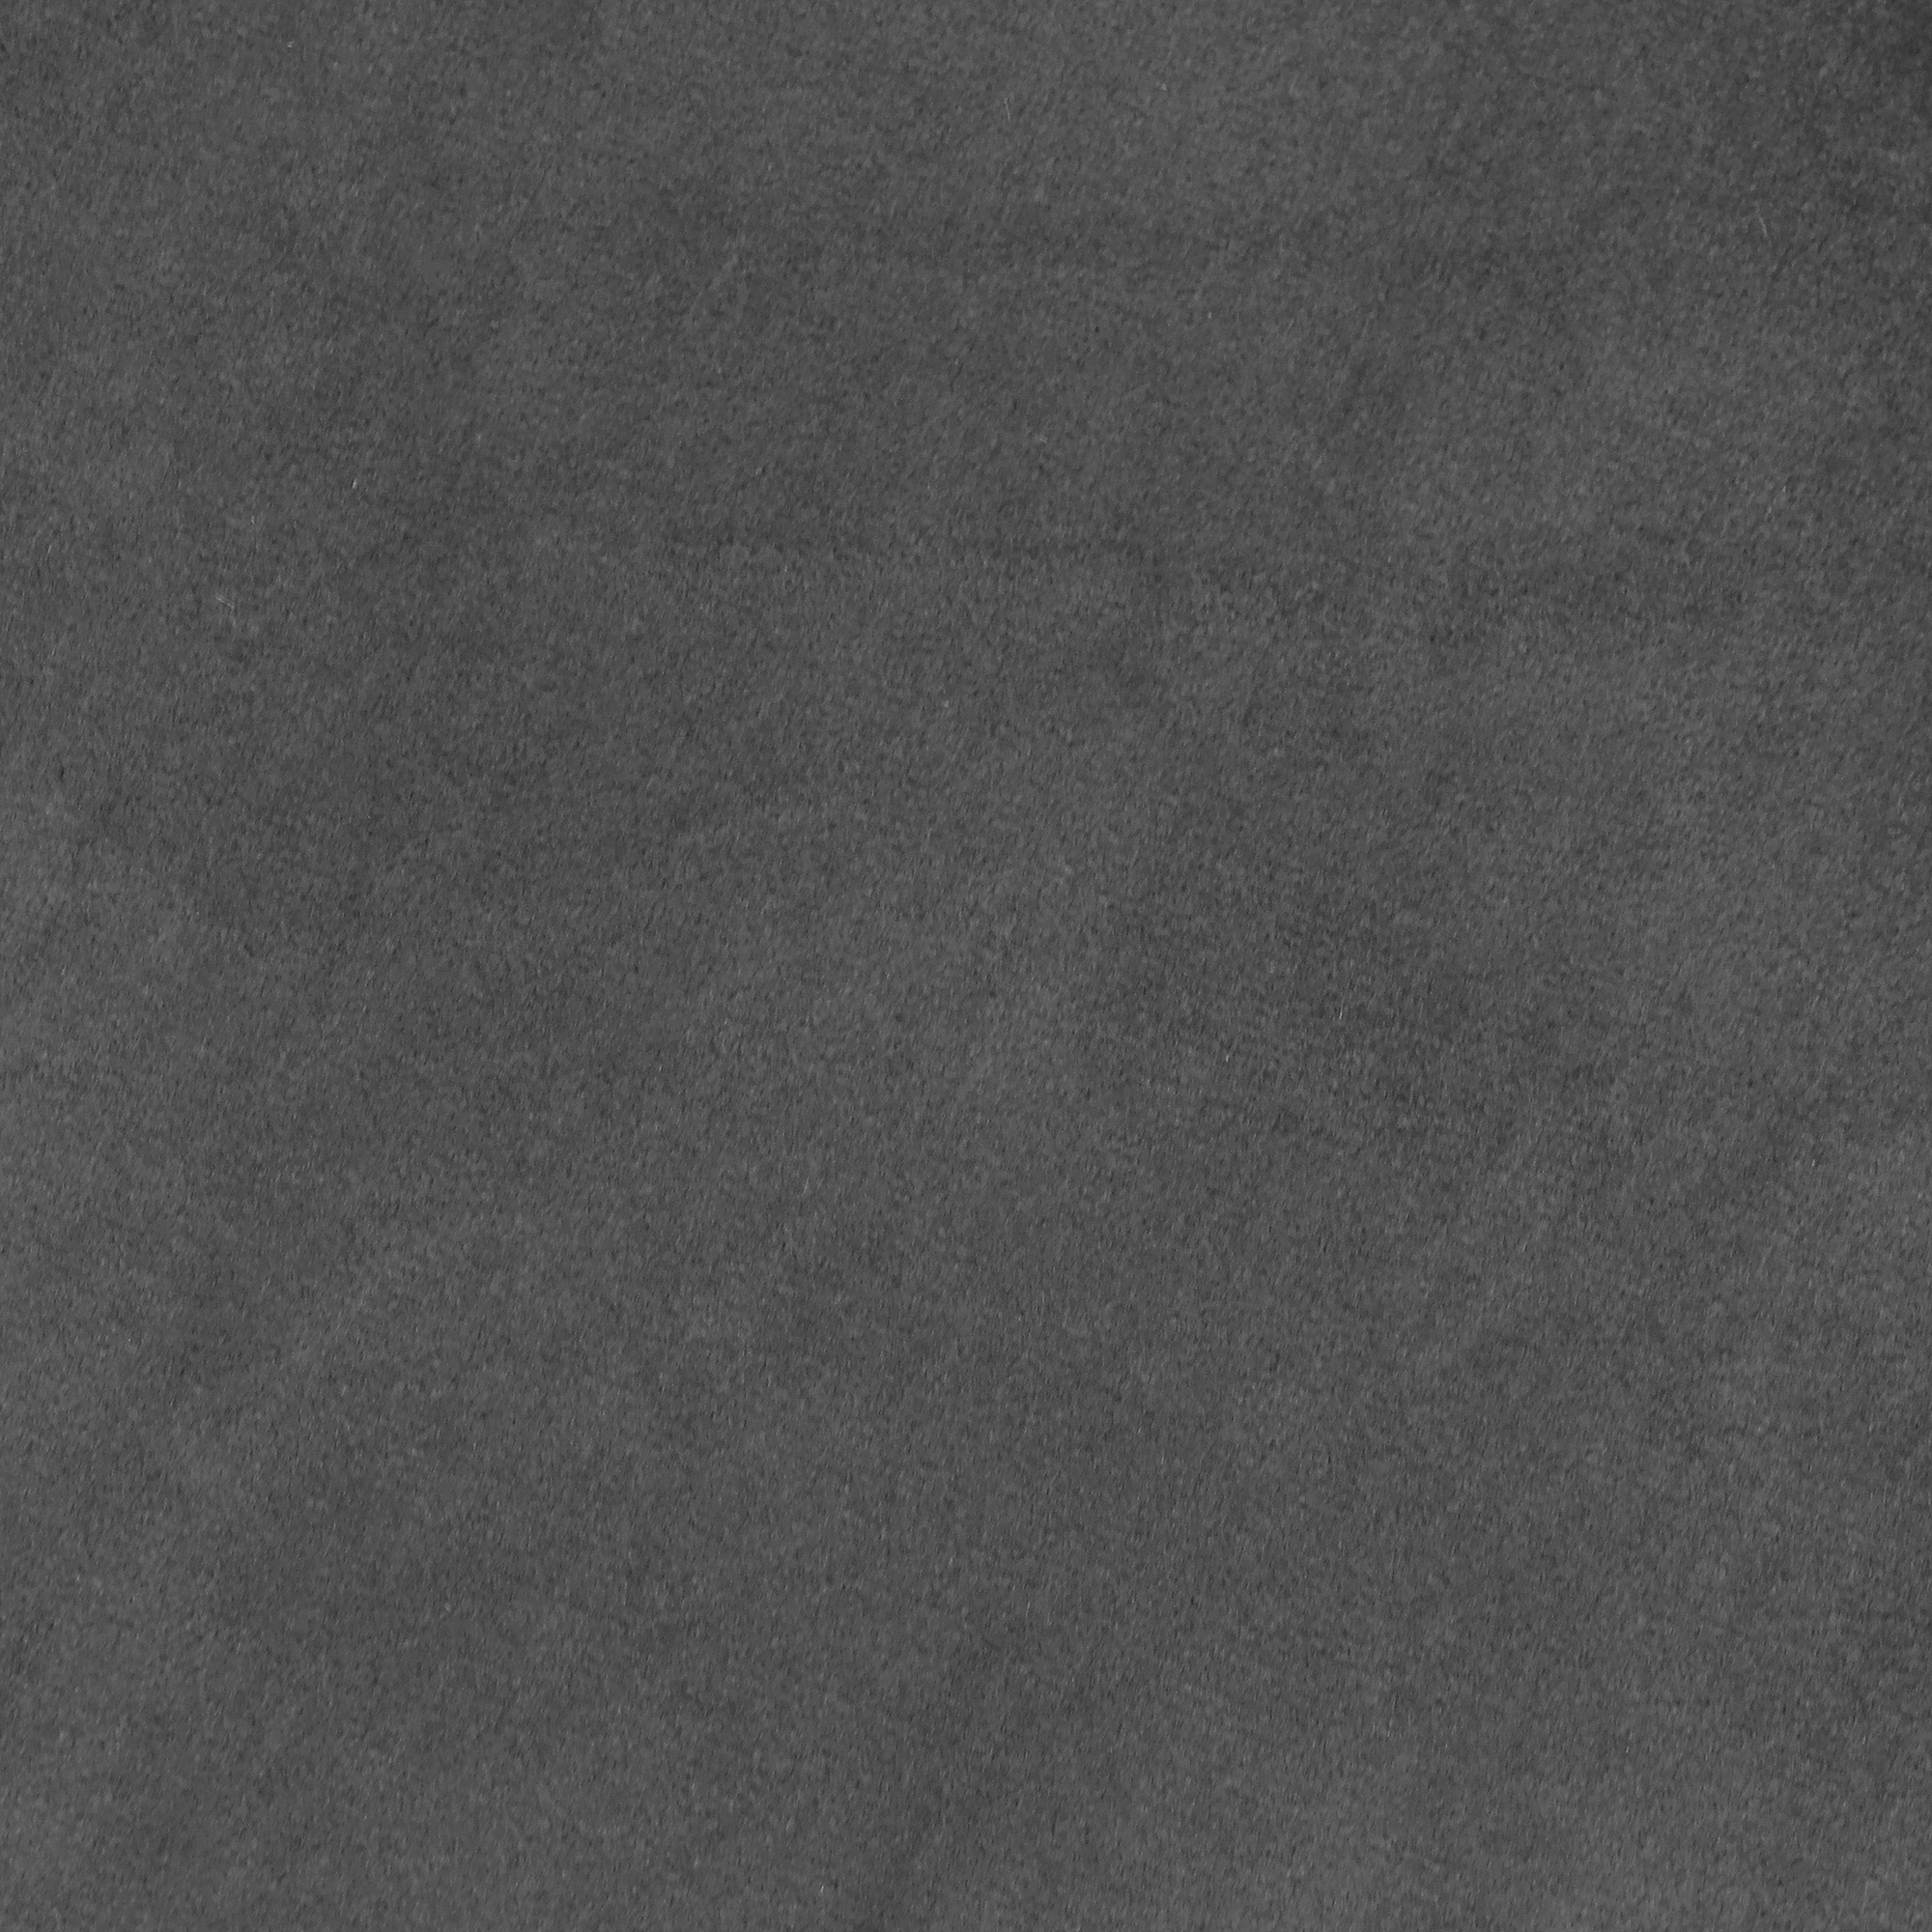 Кресло Shanshi Оливия серое 72x63x71cm, цвет серый - фото 6